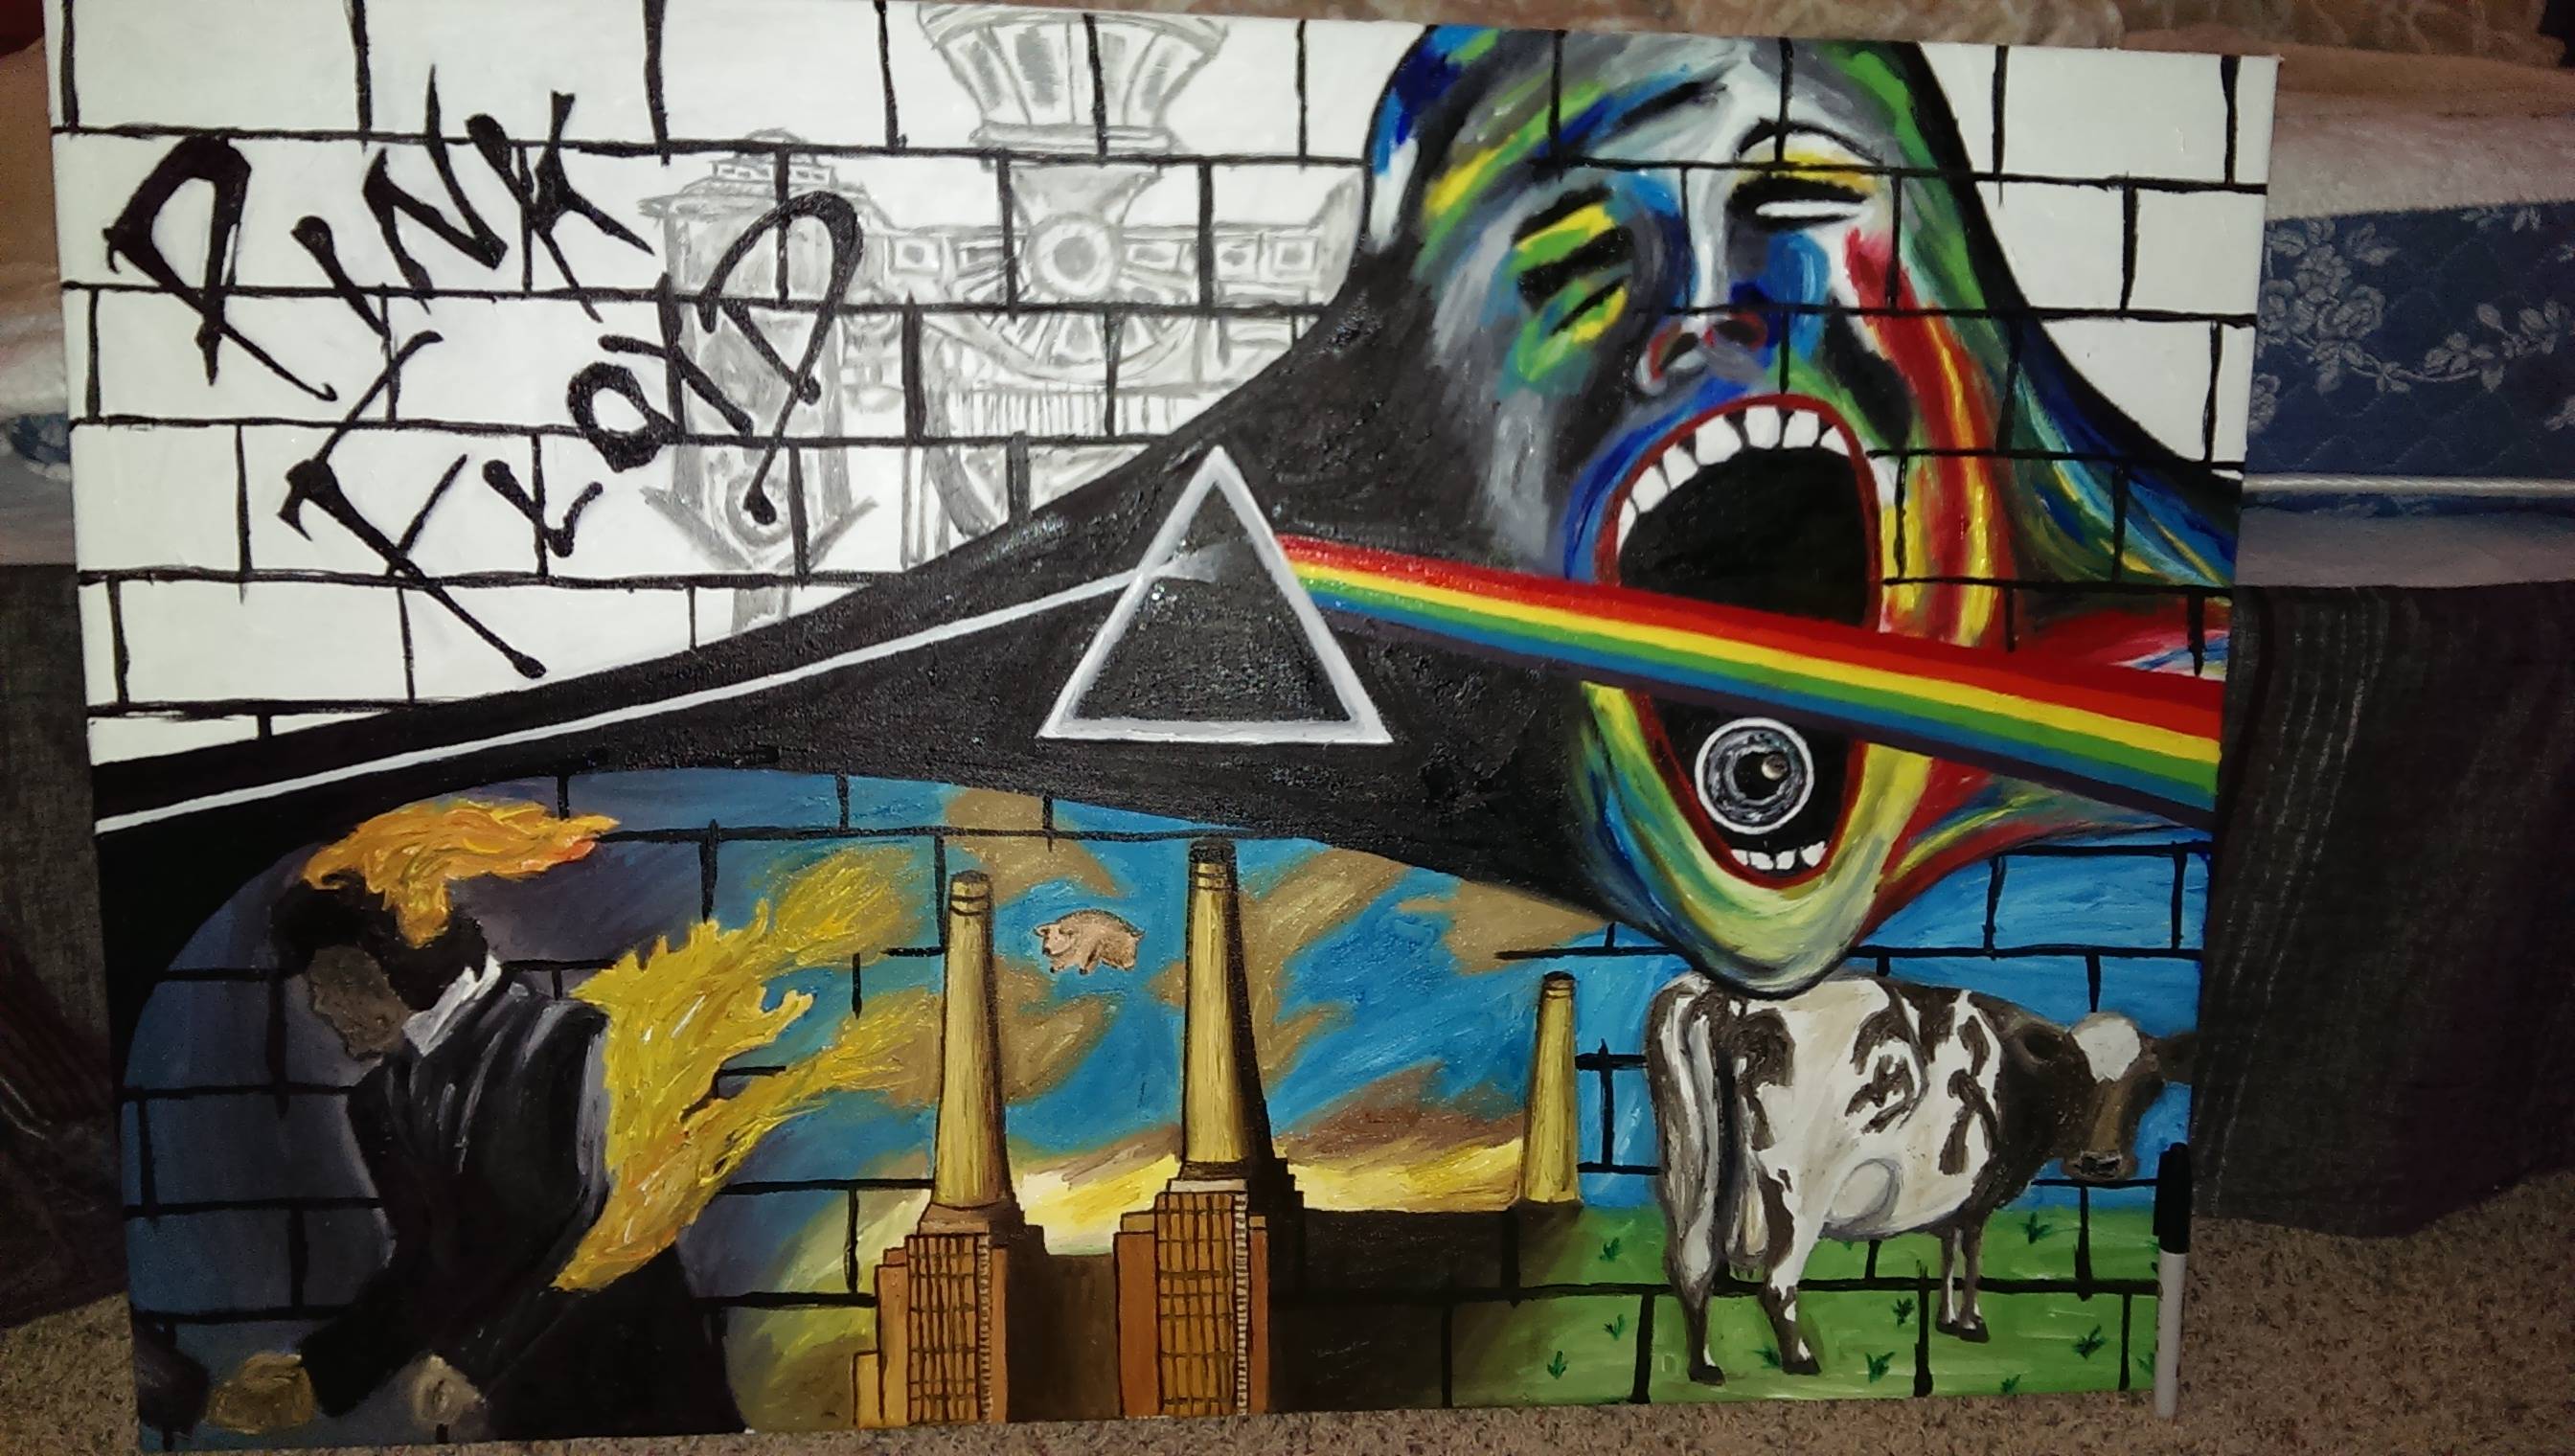 Pinkfloyd - Pink Floyd Painting.